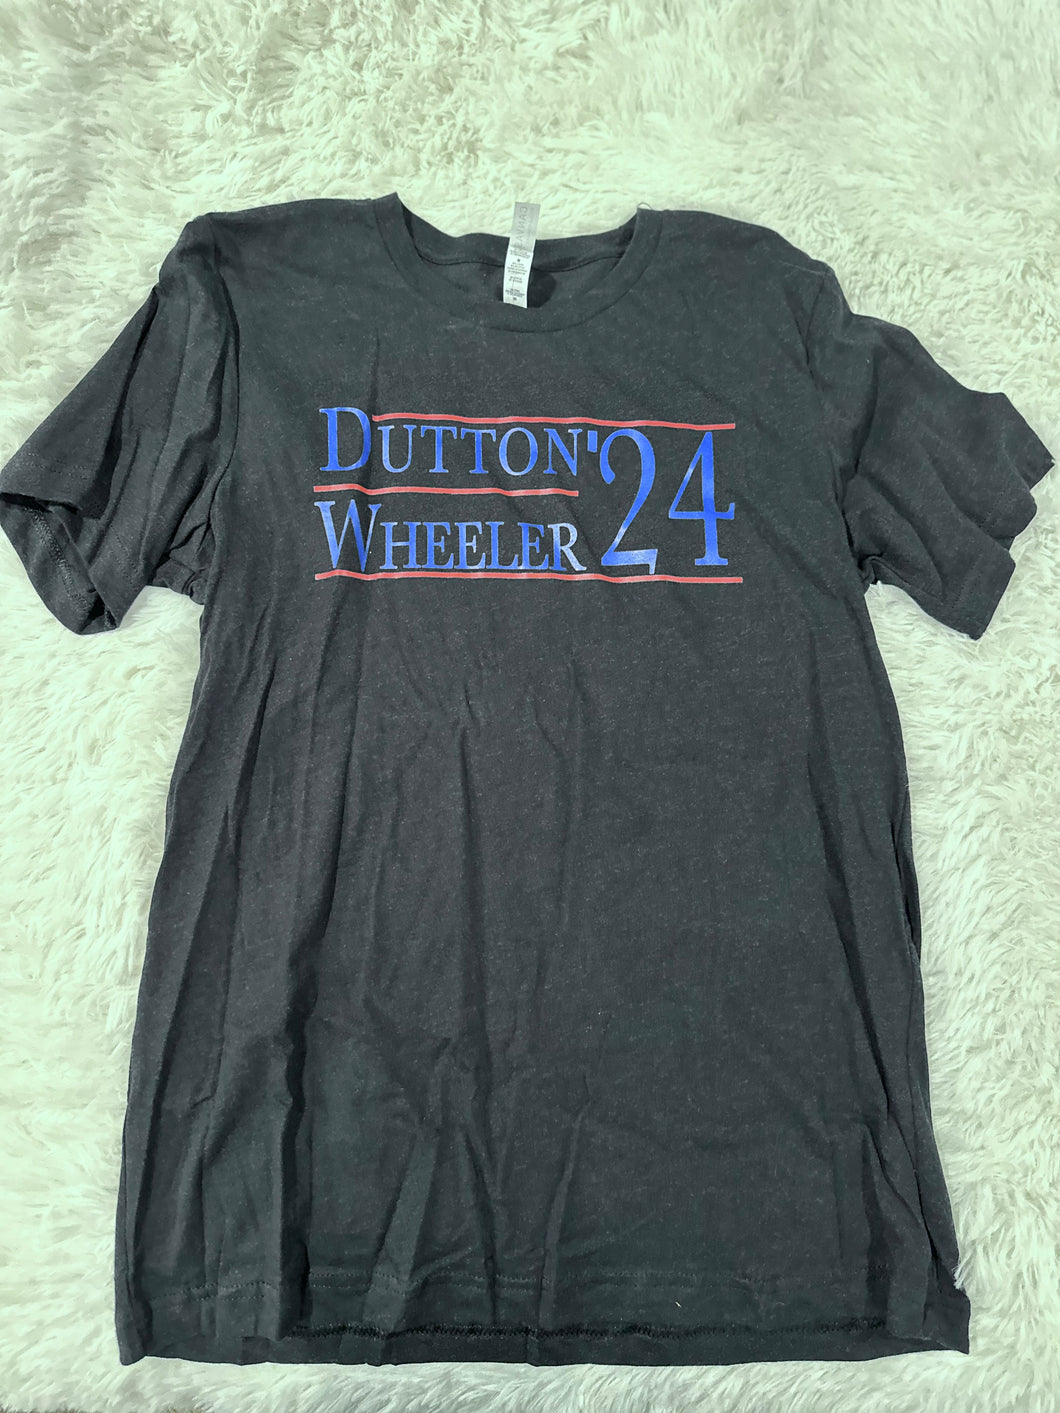 Dutton/Wheeler 24 T-Shirt - MEDIUM